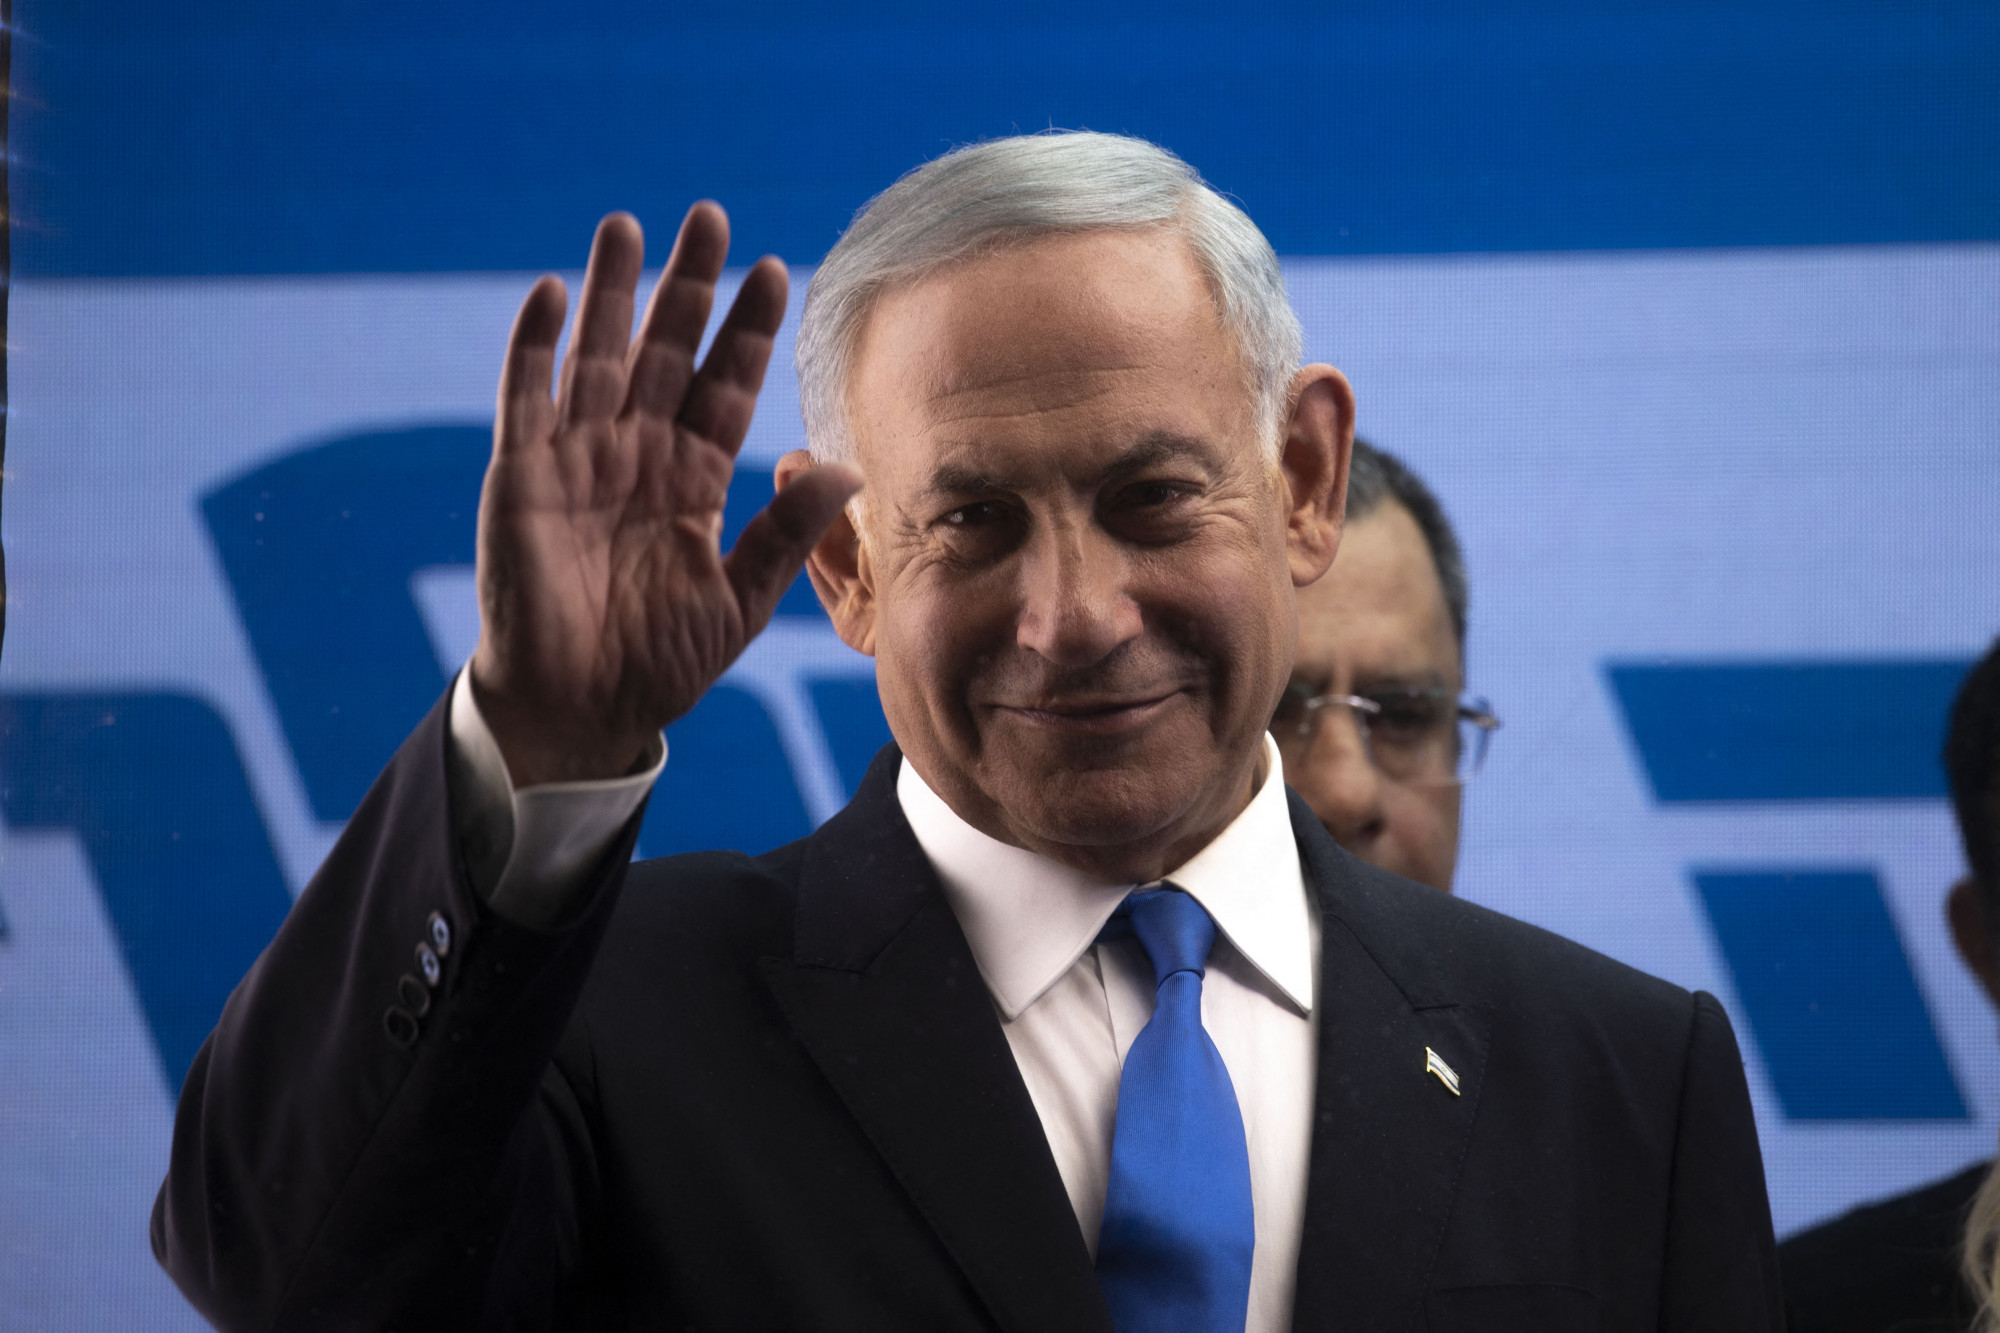 Az utolsó pillanatban sikerült a kormányalakítás Netanjahu vezetésével